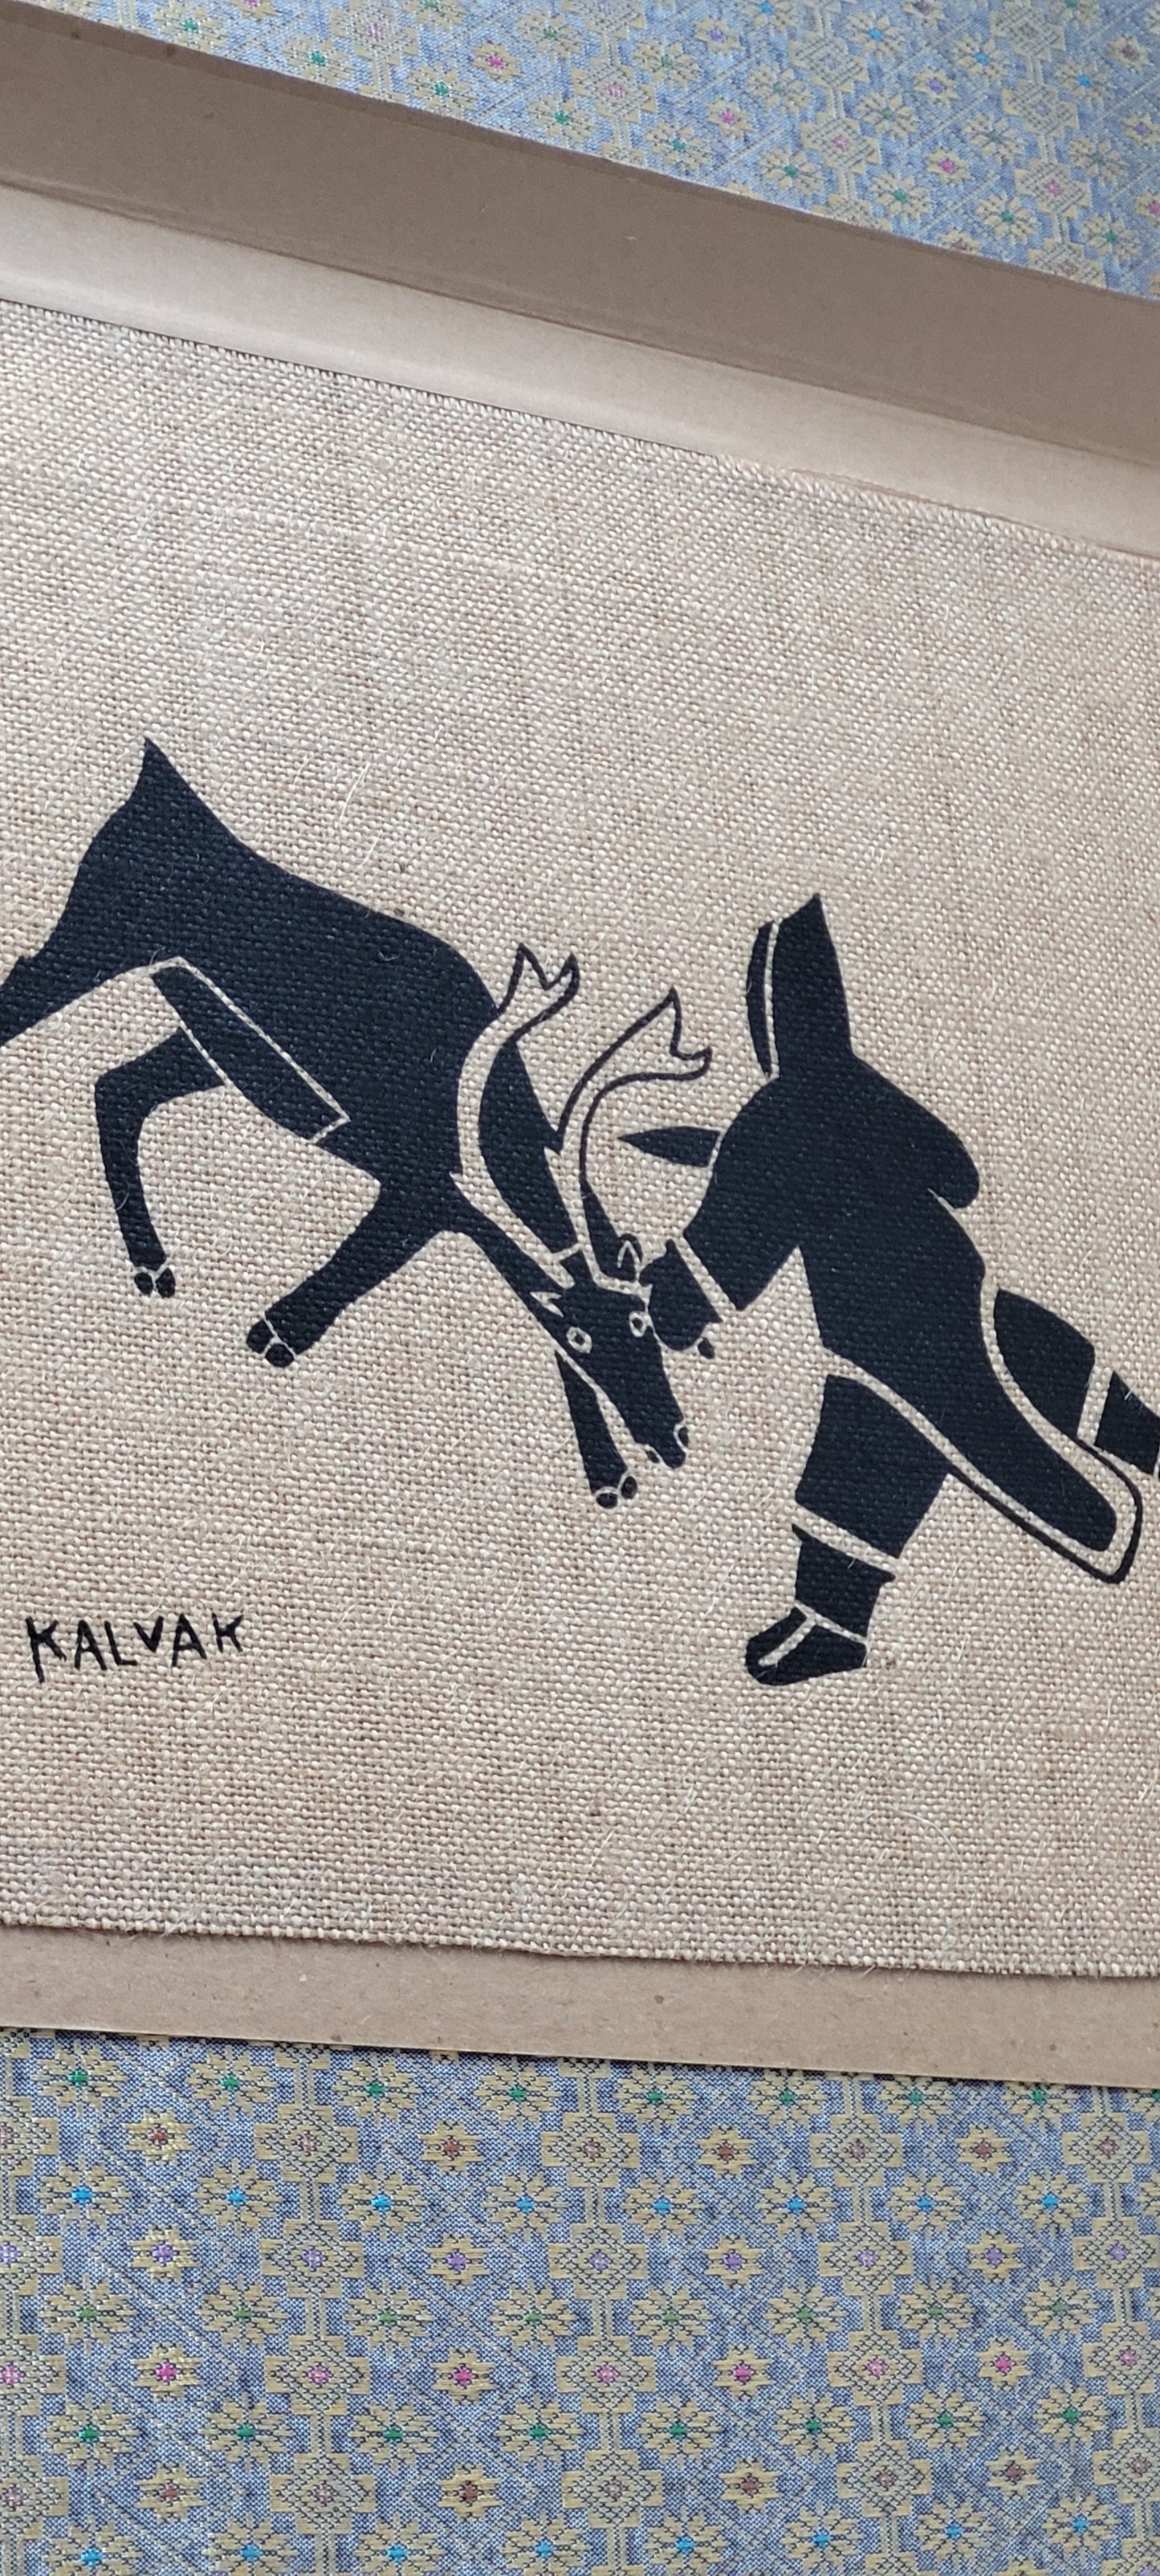 Helen Kalvak "The Hunt" 70s Print Holman North West Territories